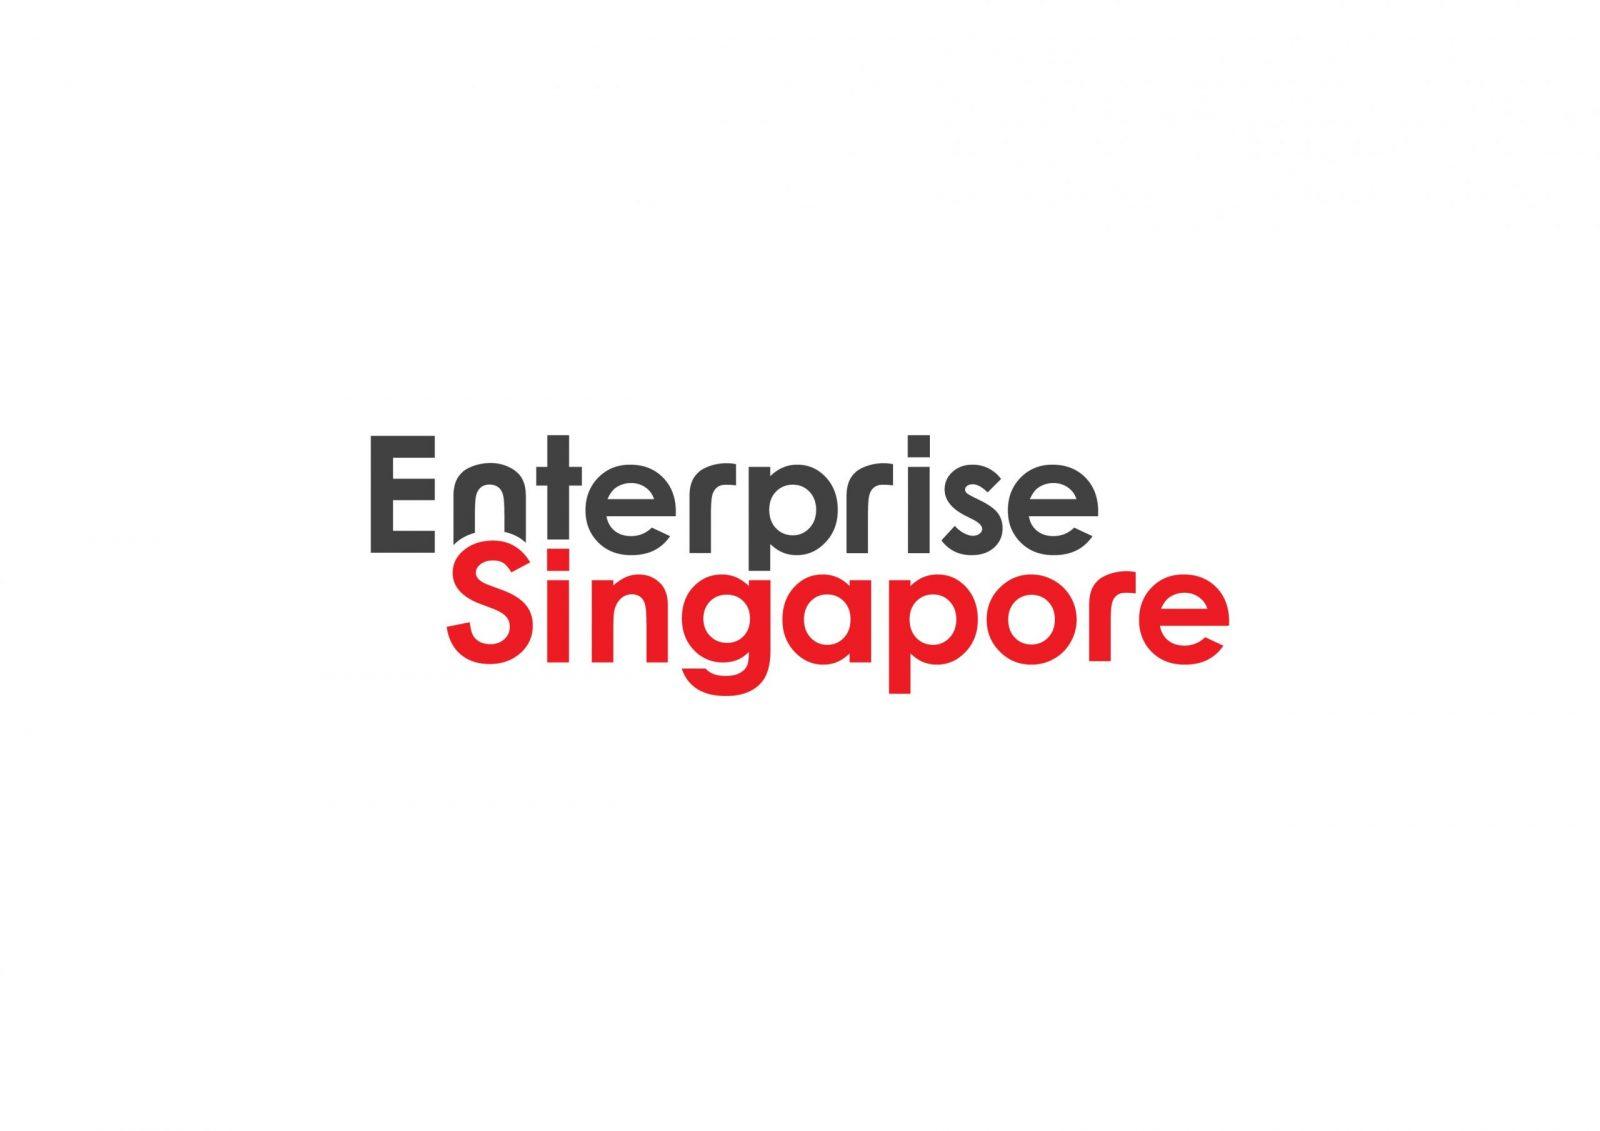 Enterprise_Singapore_Full_Colour_Logo-scaled.jpg